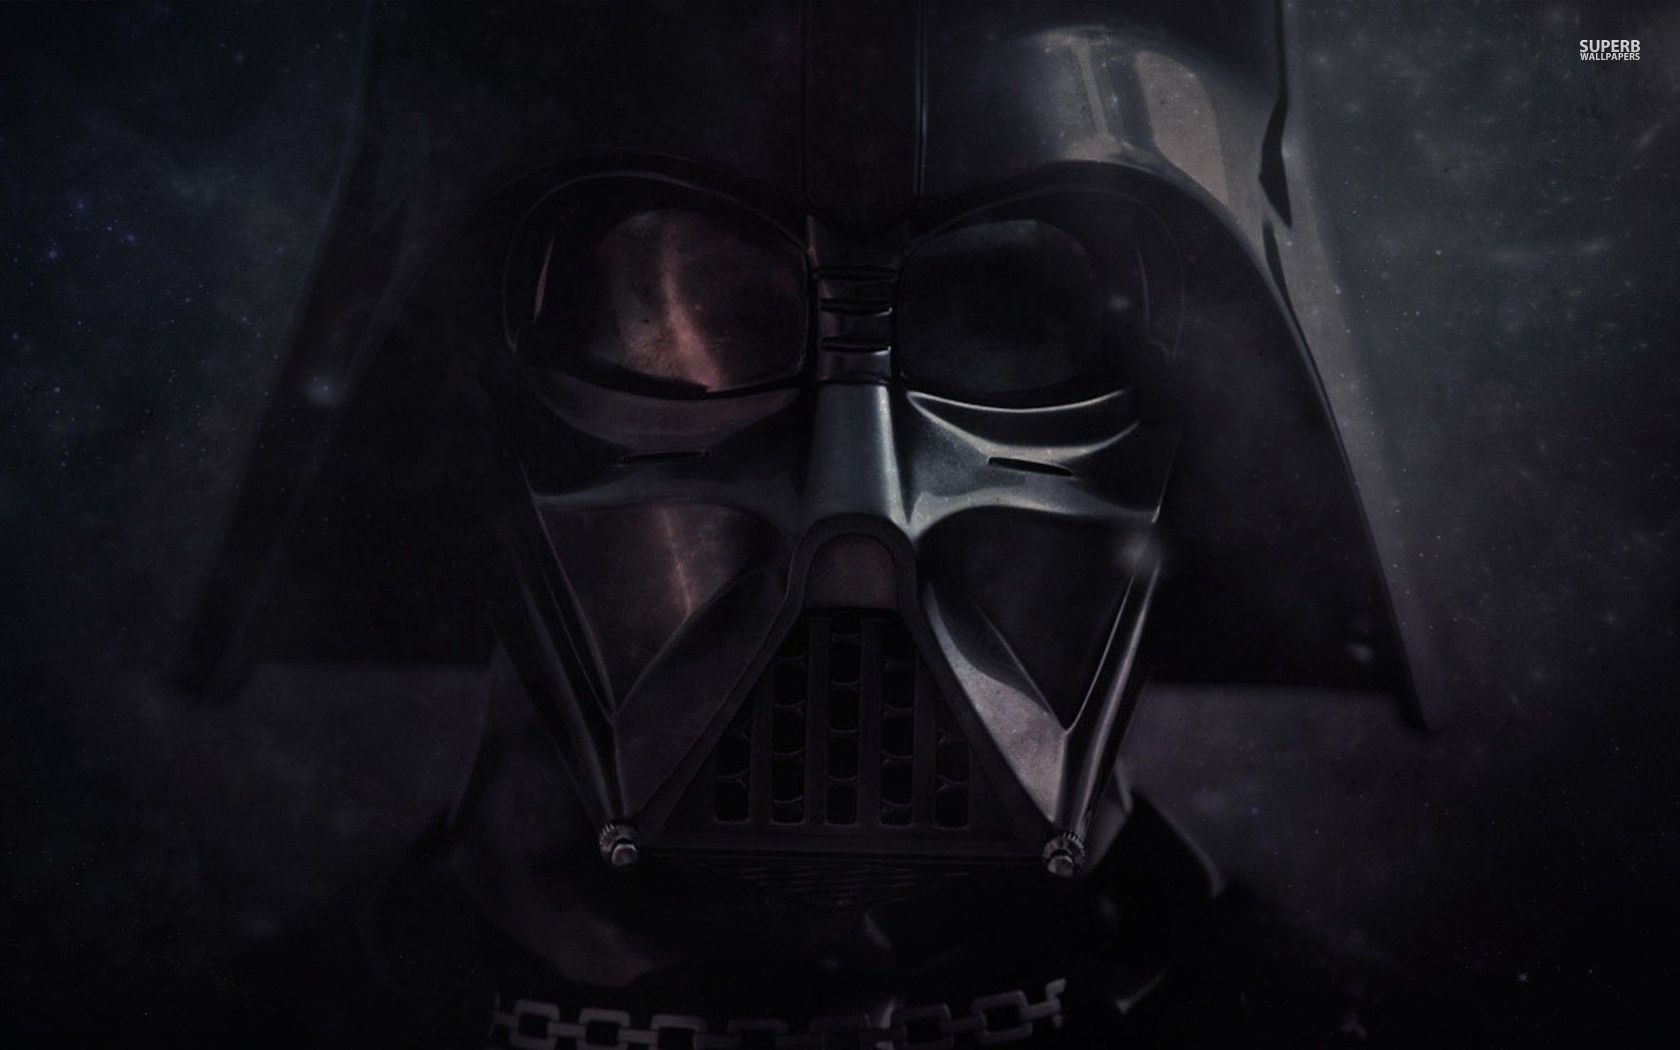 Star Wars Darth Vader 4k - HD Wallpaper 